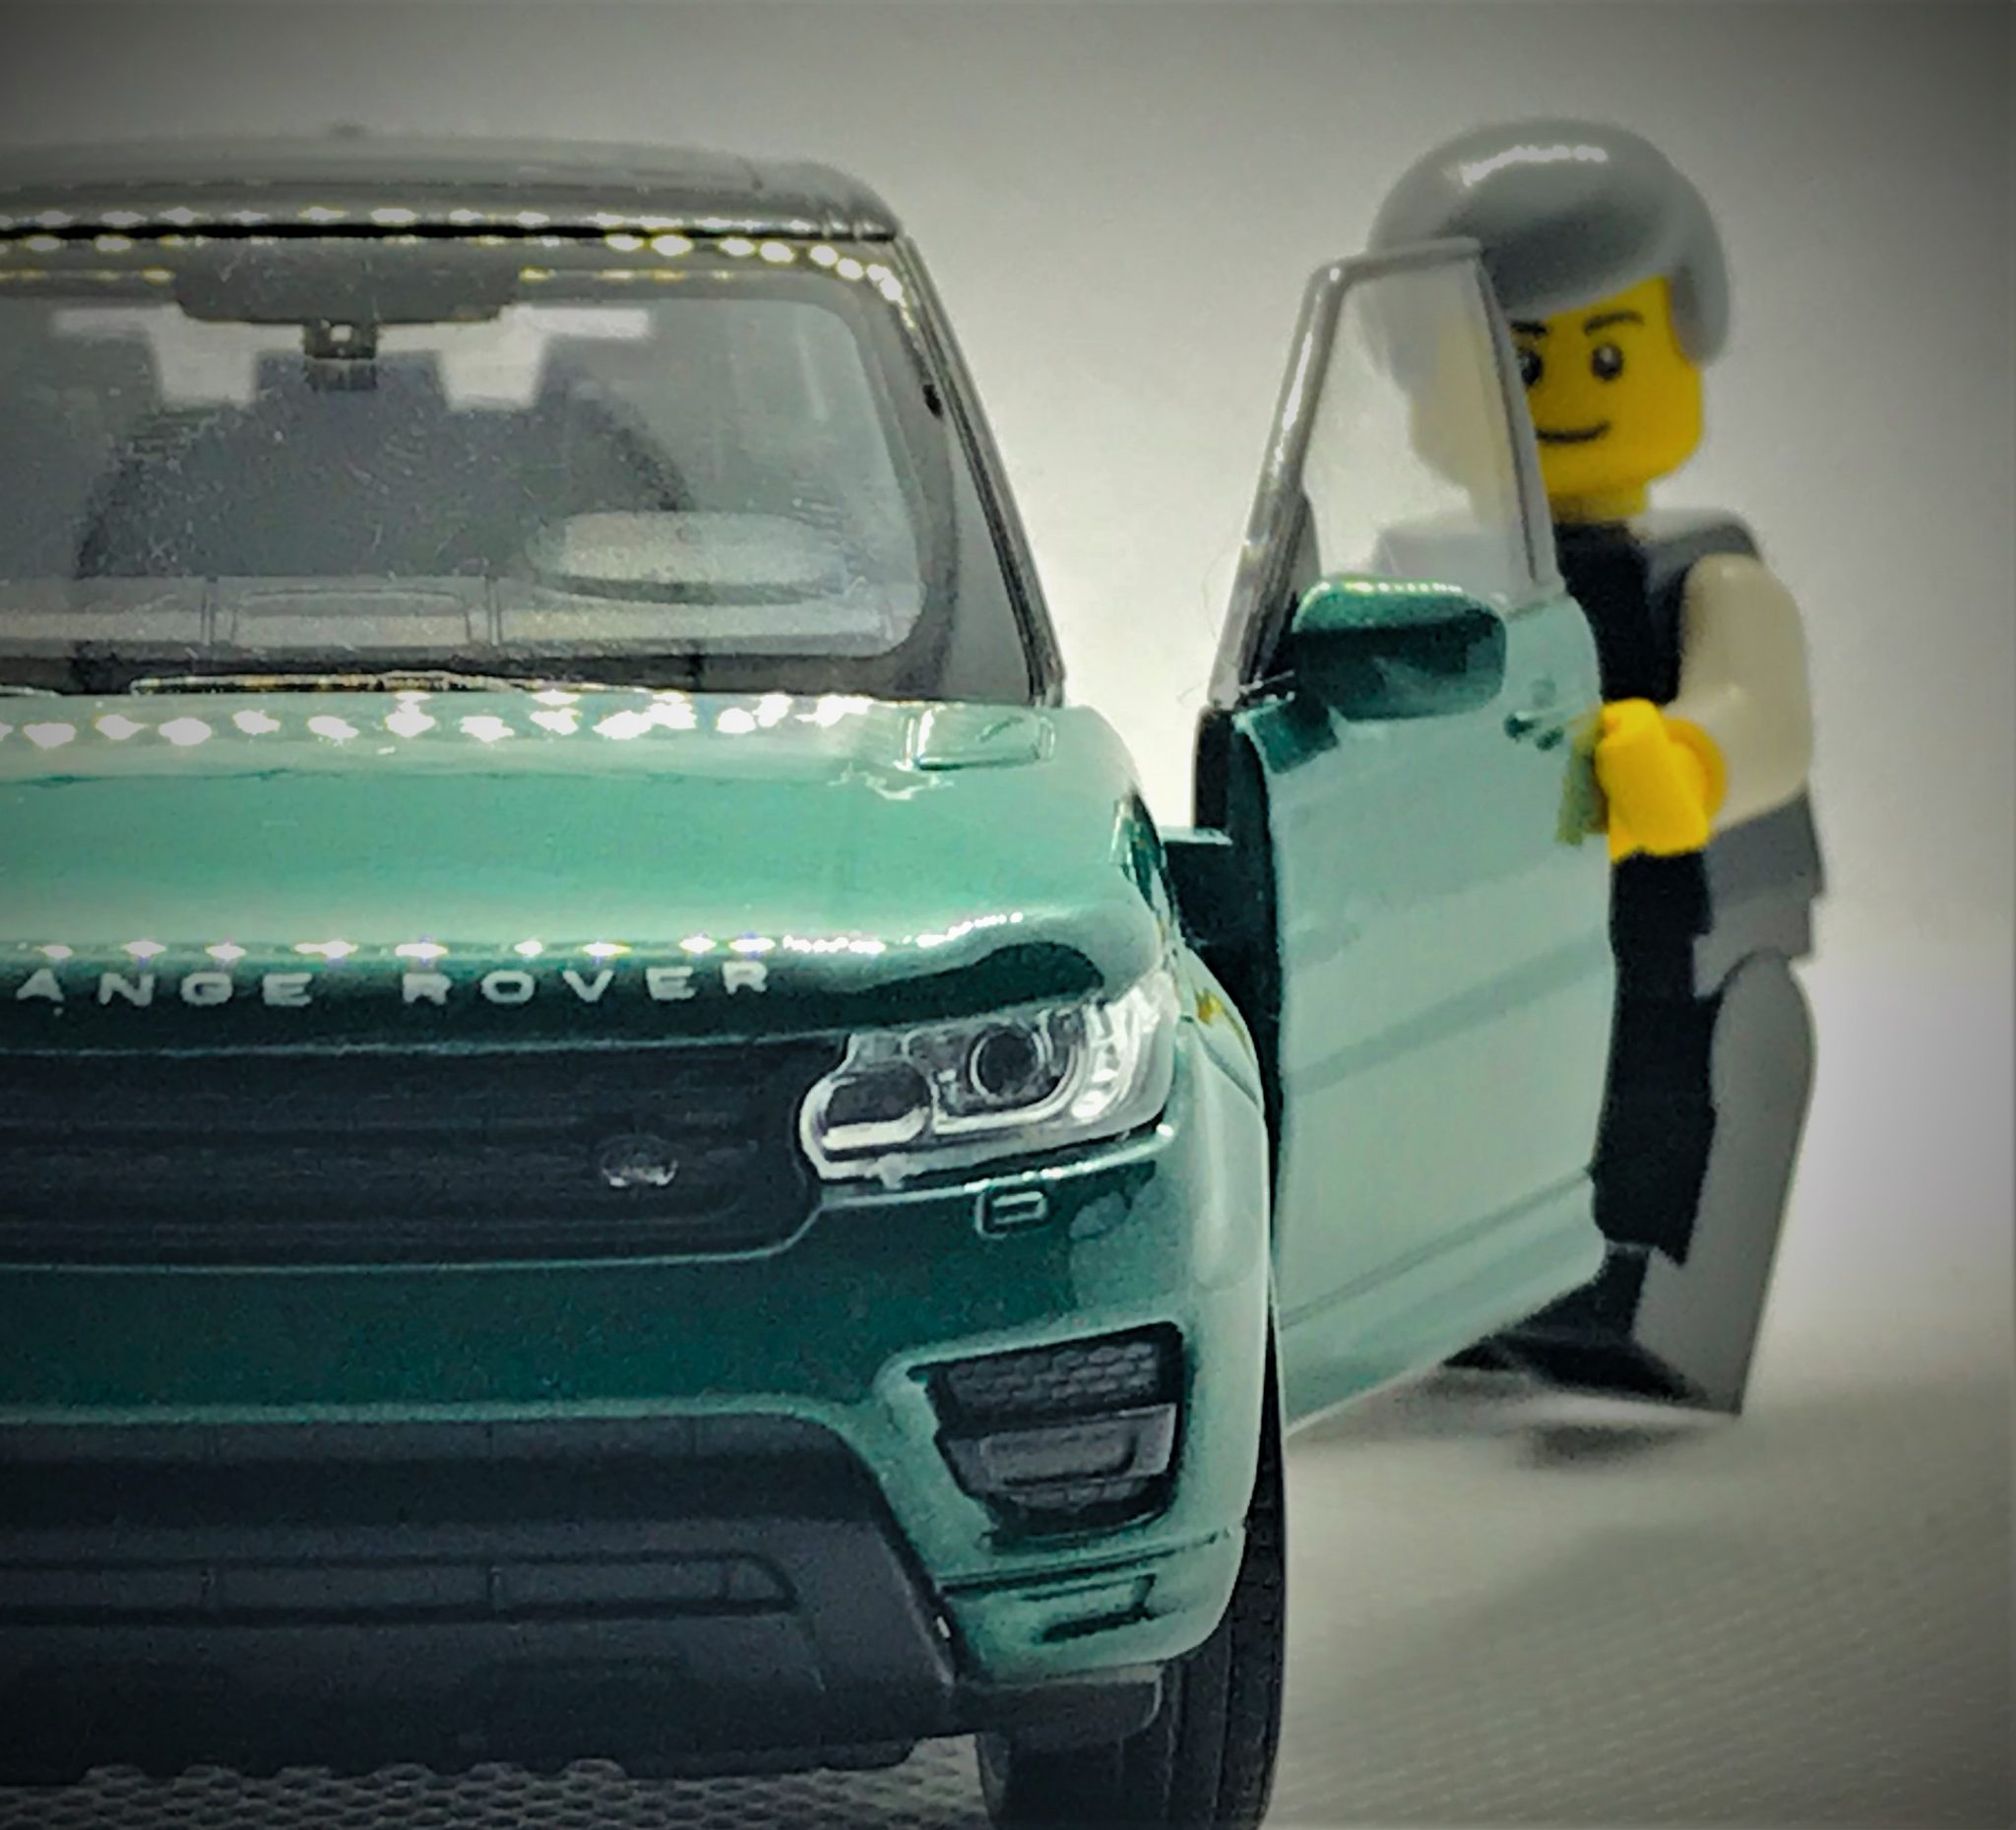 Lego Figure and Car